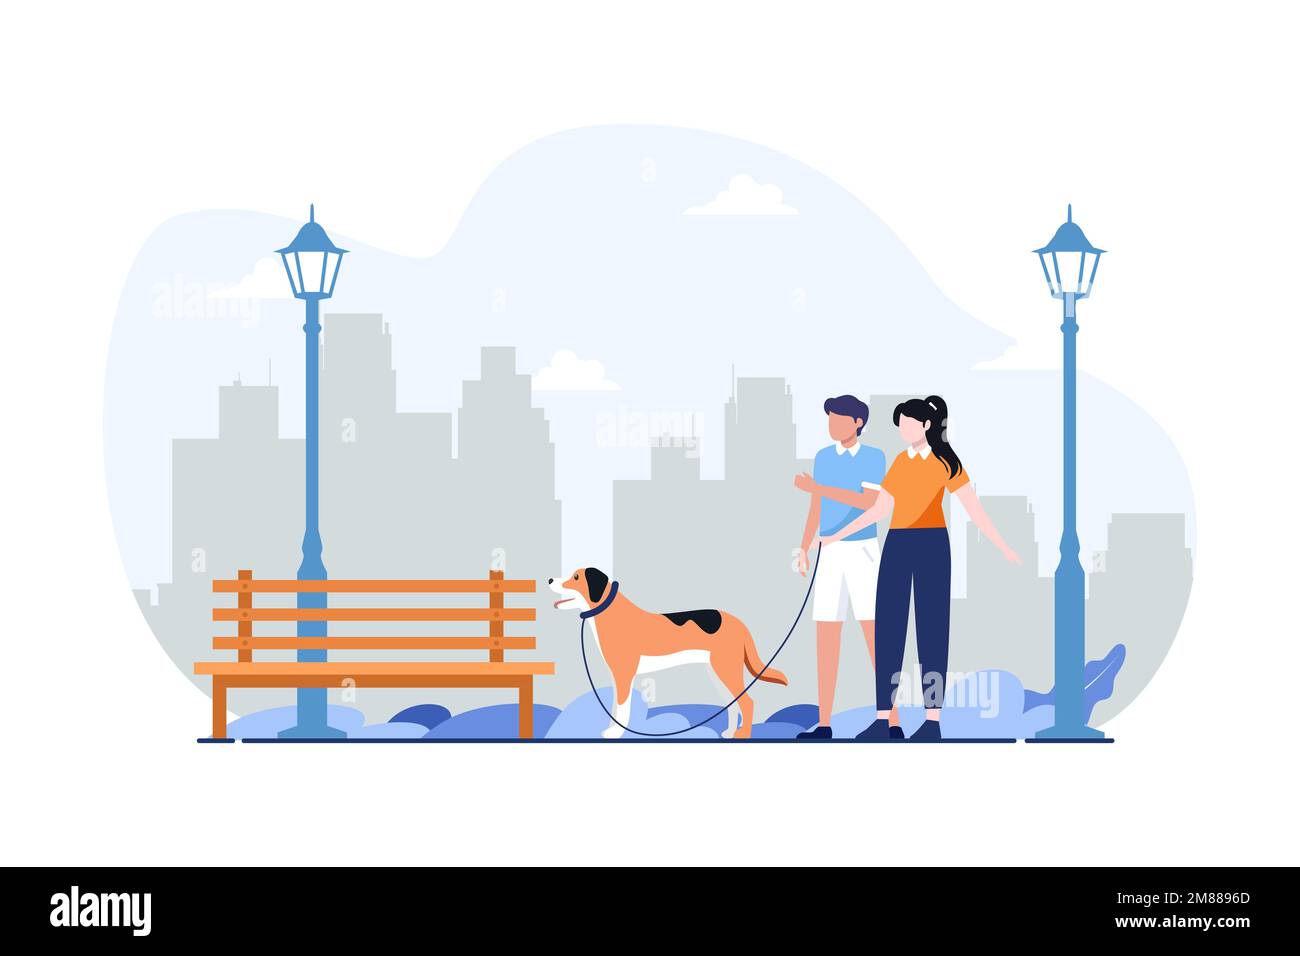 Felice nuova famiglia o coppia camminando con un cane. Design con illustrazione piatta per la vita familiare e le attività con animali domestici. Può essere utilizzato per il Web o l'applicazione e. Illustrazione Vettoriale